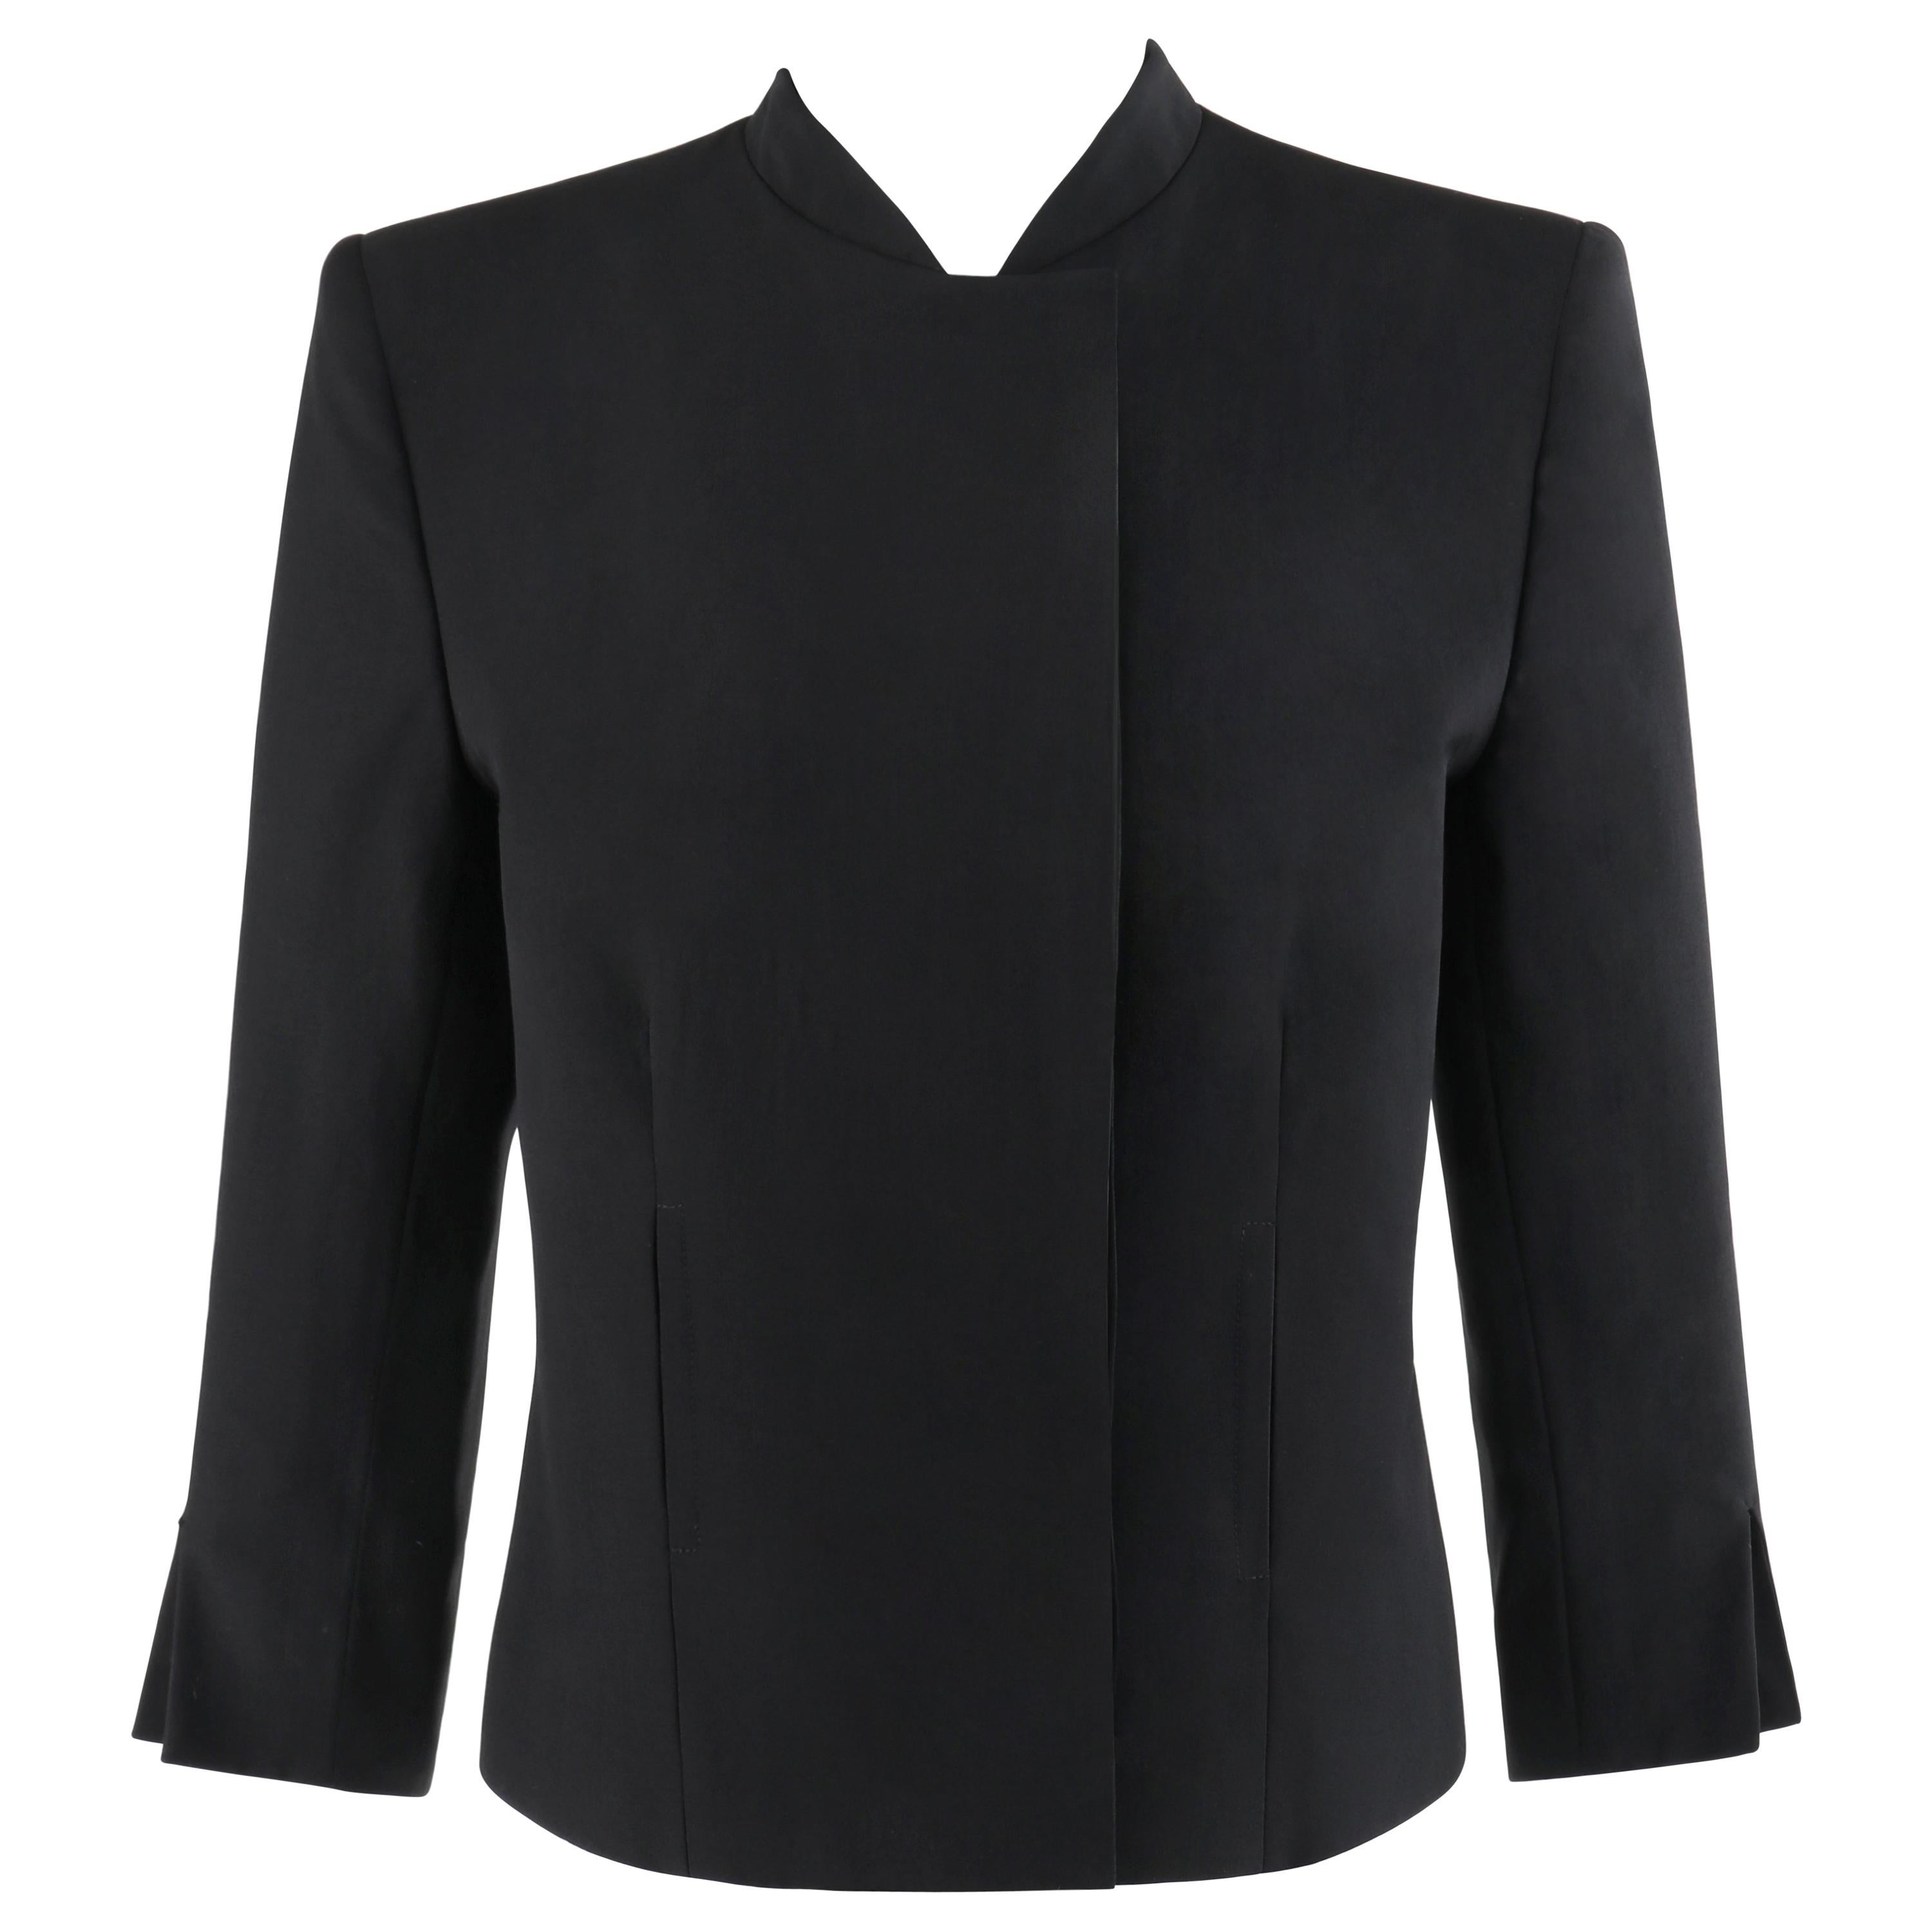 ALEXANDER McQUEEN S/S 1999 “No. 13” Black Extended Shoulder Blazer Jacket Sz 40